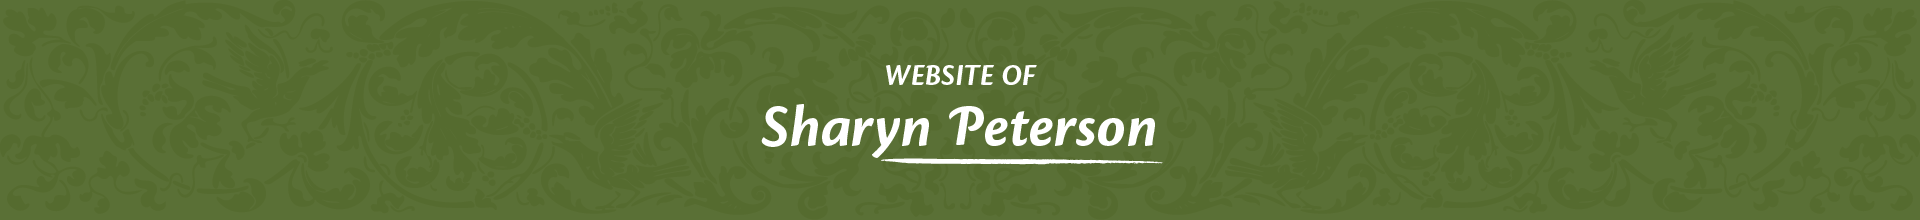 Sharyn Peterson Website